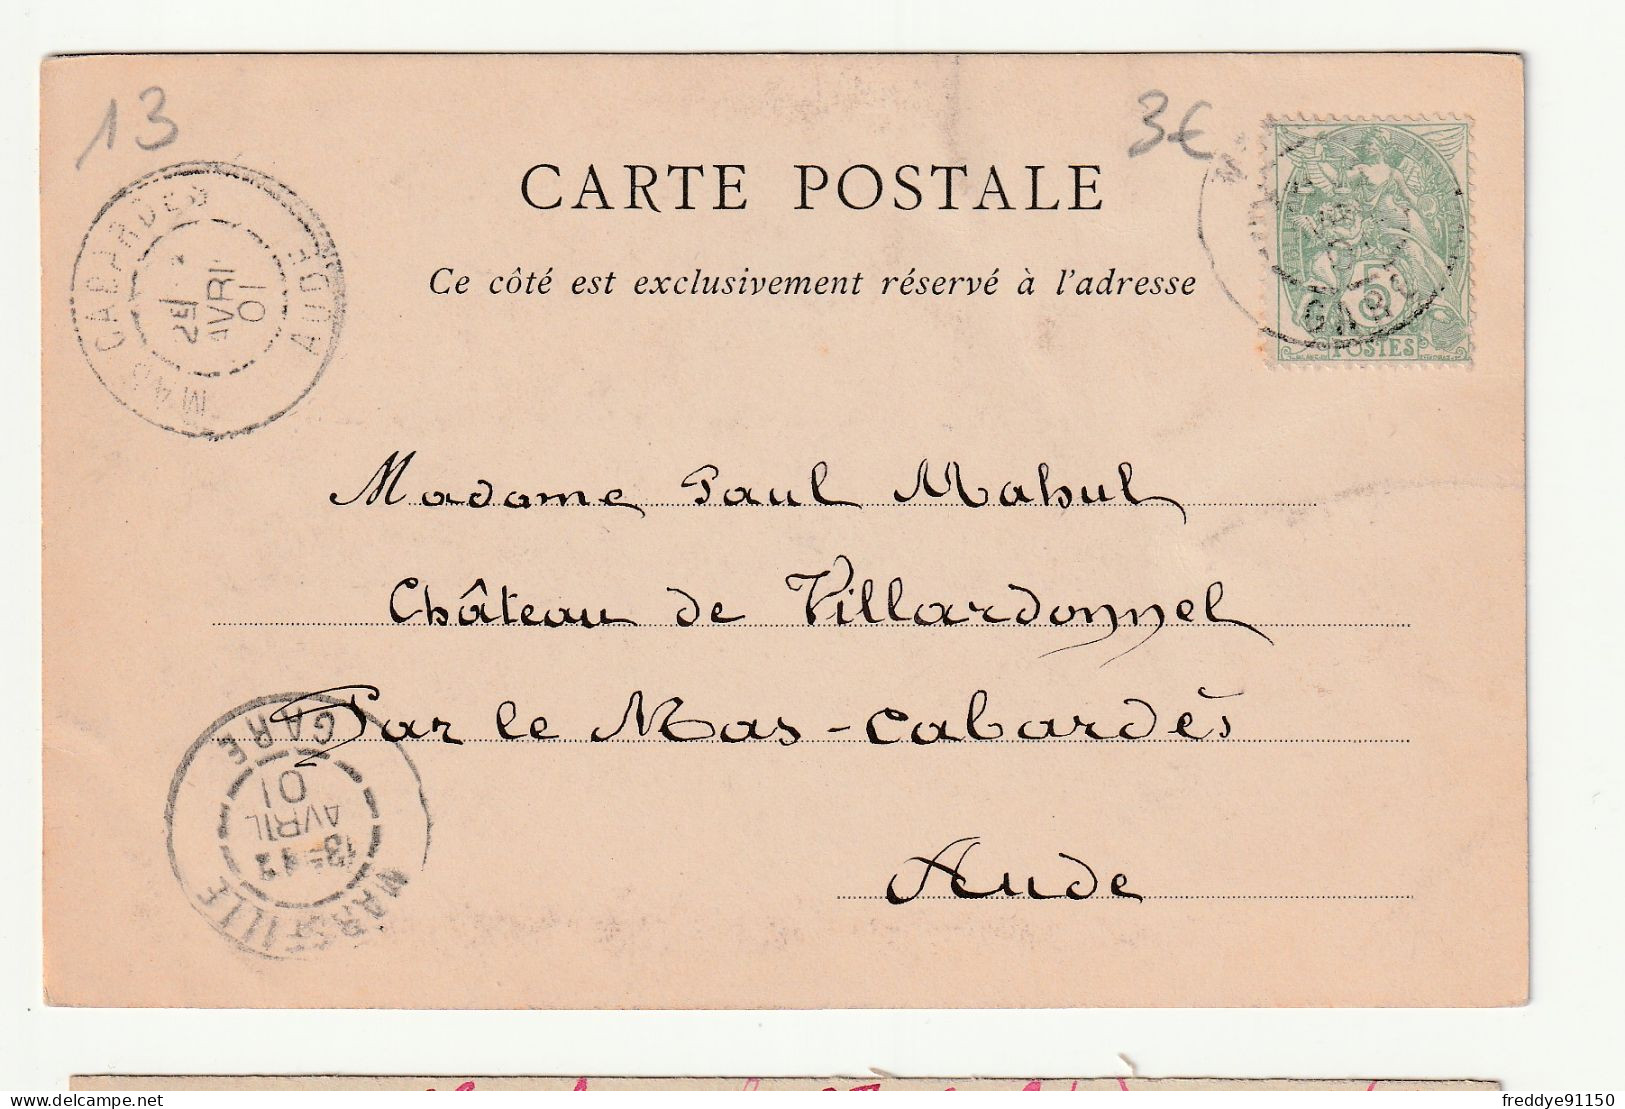 13 . MARSEILLE . Le Palais Longchamp . 1901 - Monuments